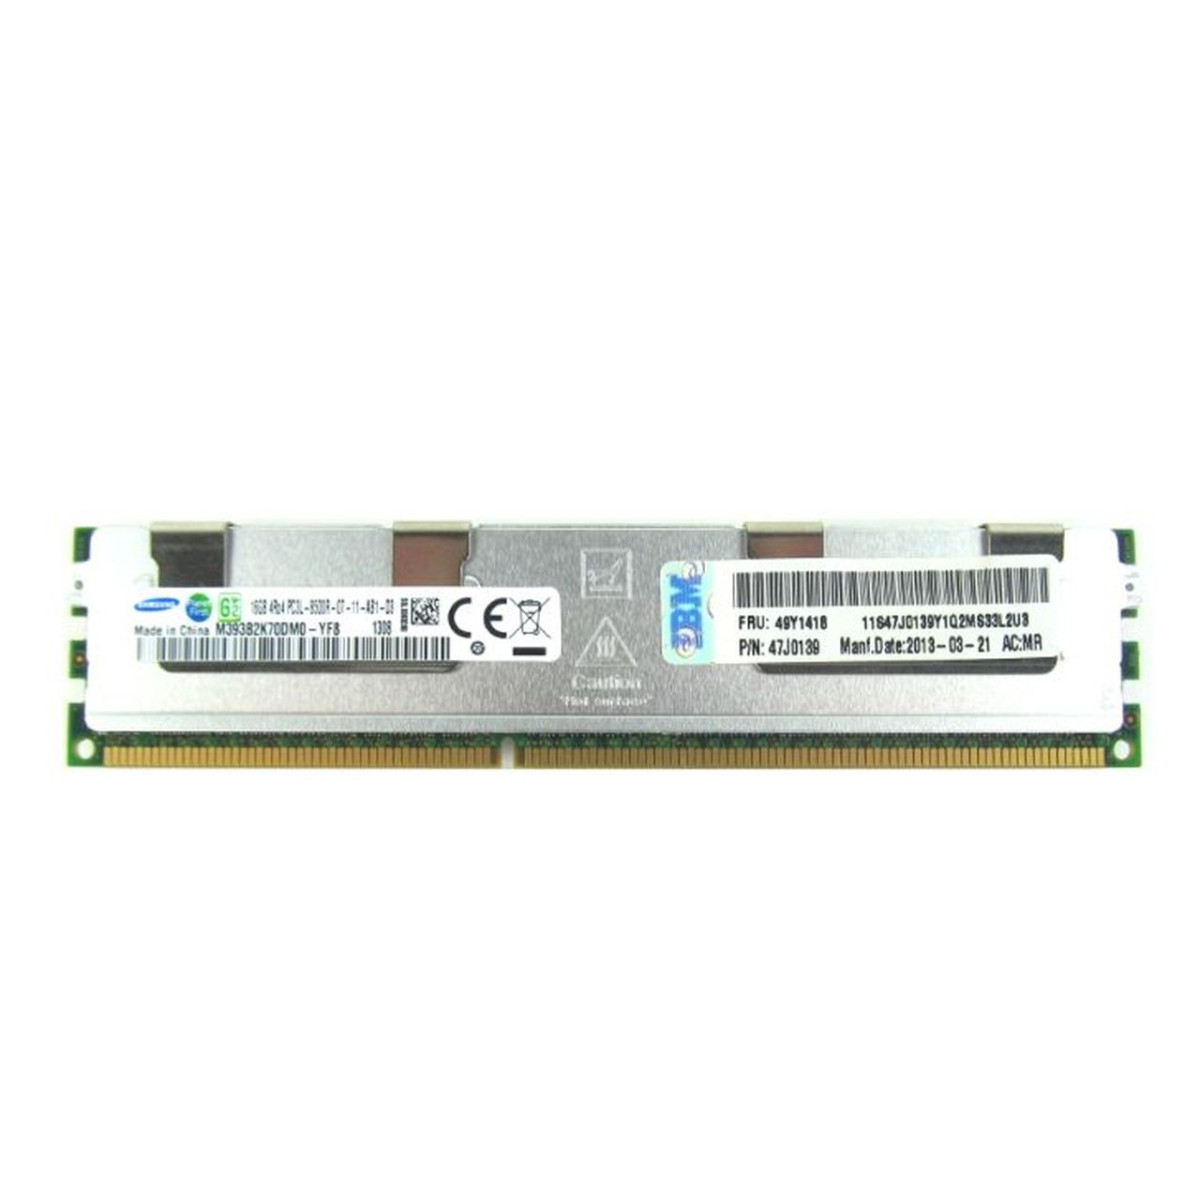 IBM SAMSUNG 16GB PC3L-8500R ECC REG 49Y1418 47J013